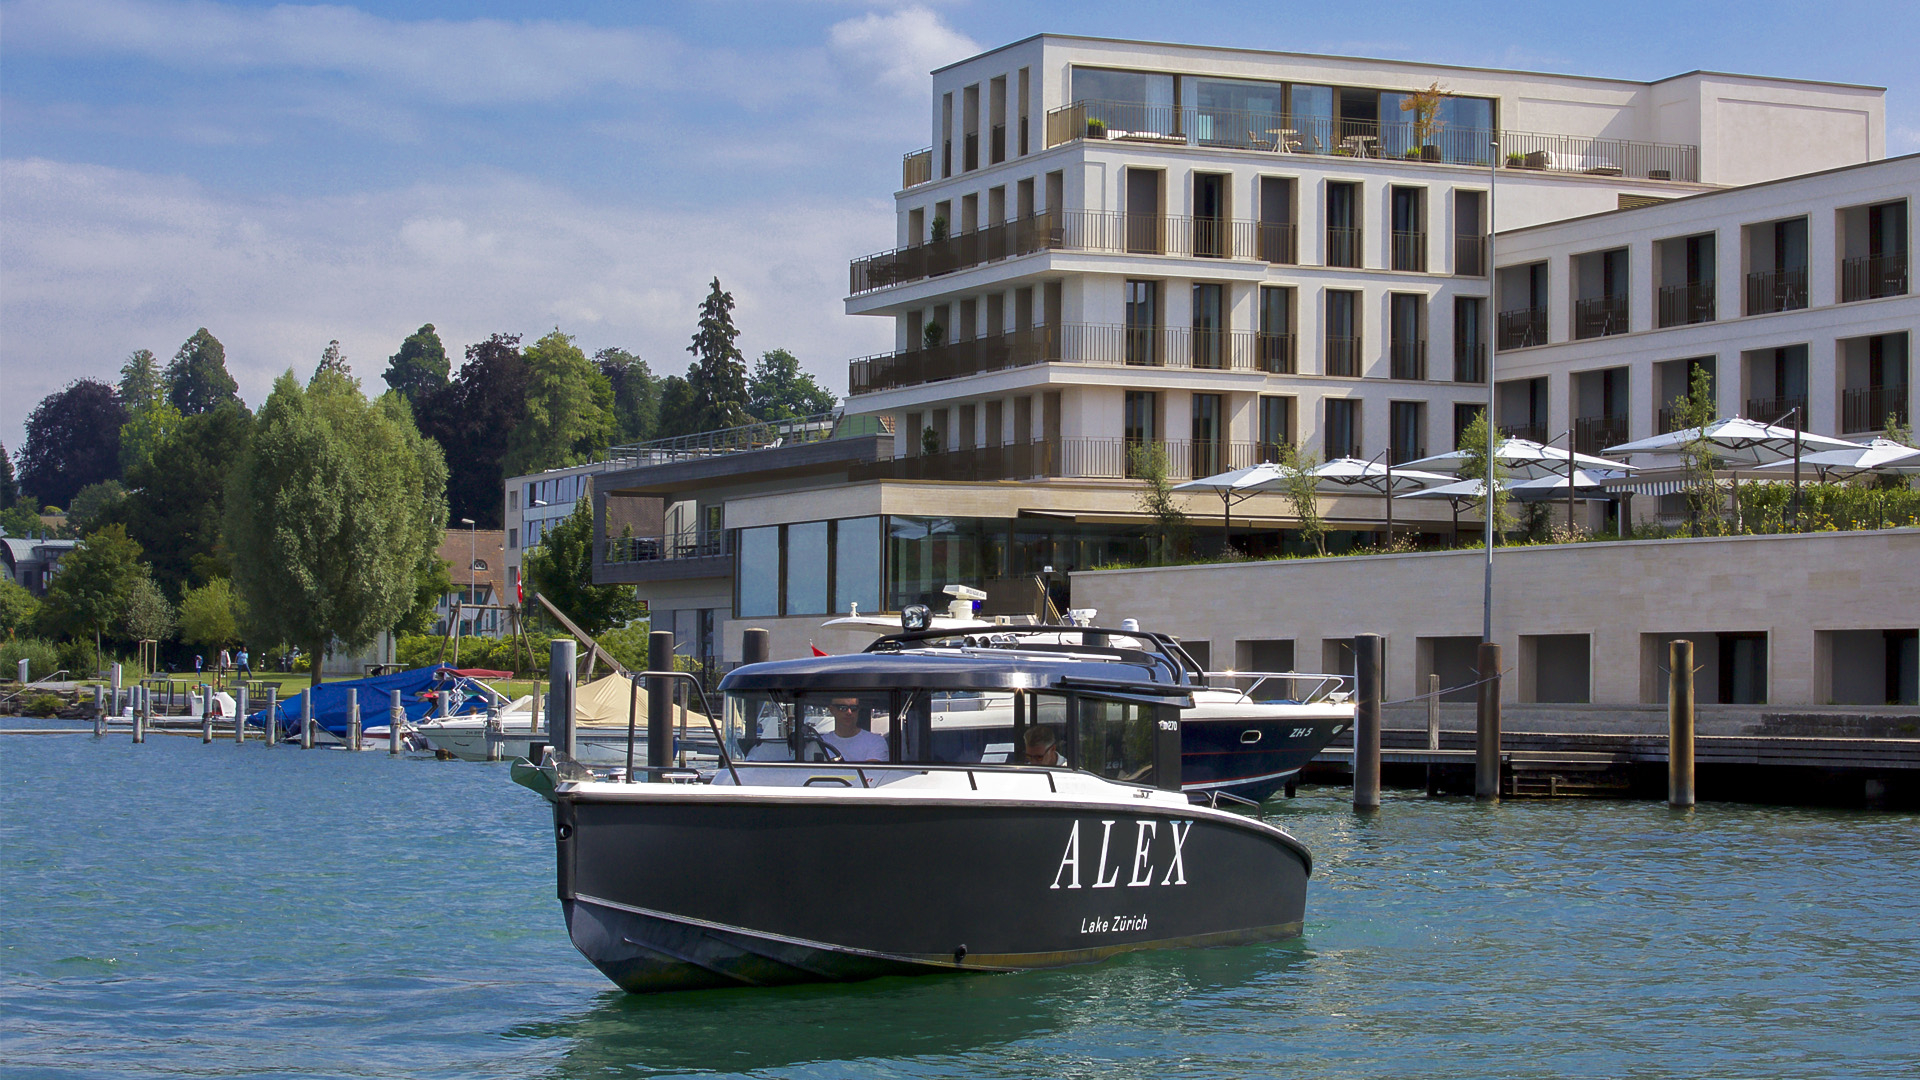 أليكس - فندق وأجنحة حياة البحيرة الجنوبية - slide